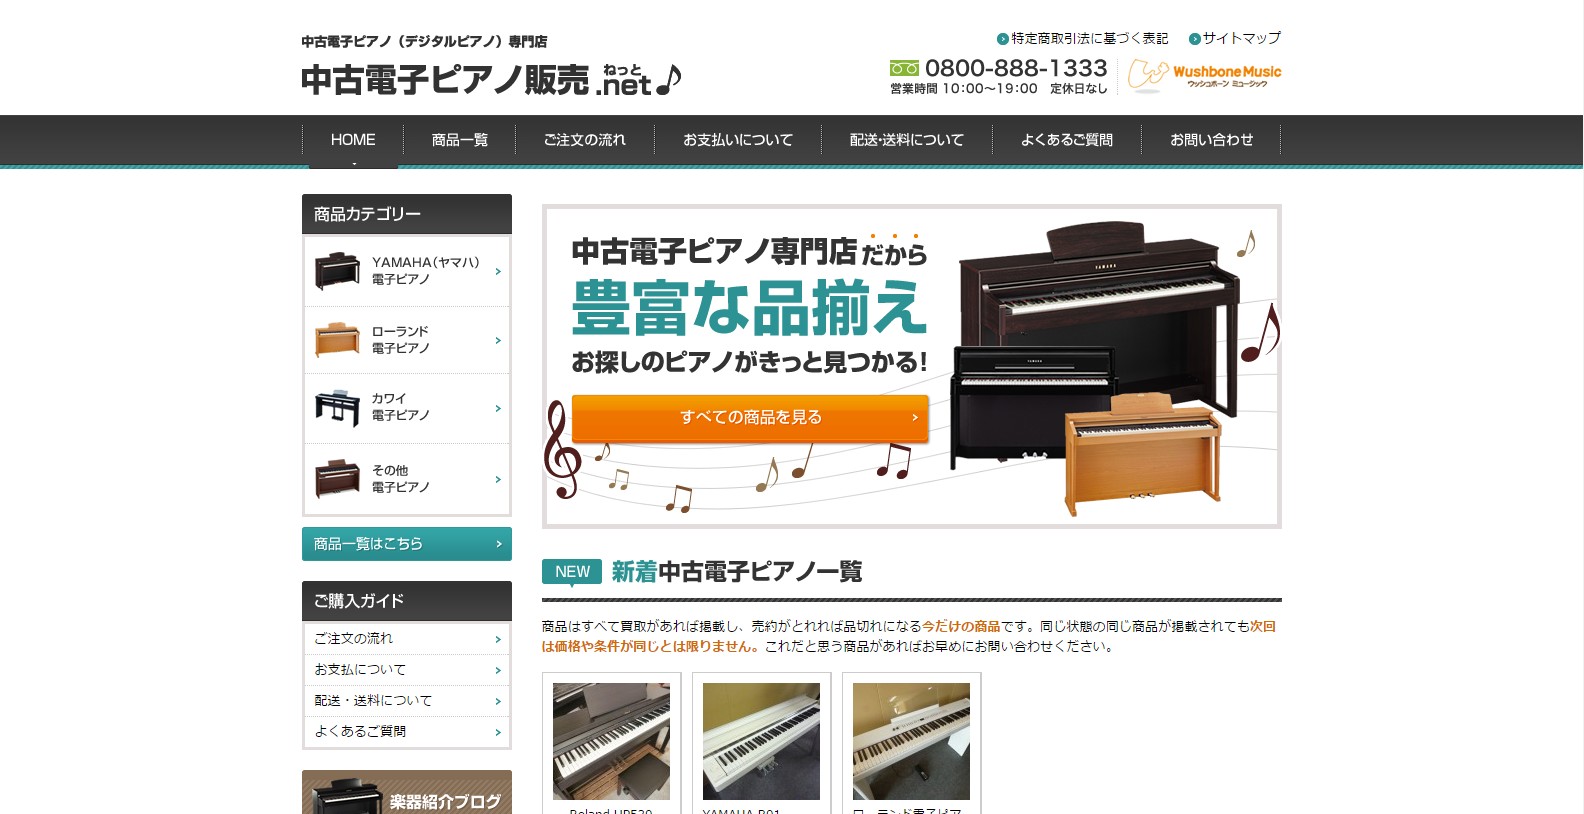 中古電子ピアノ販売.net様